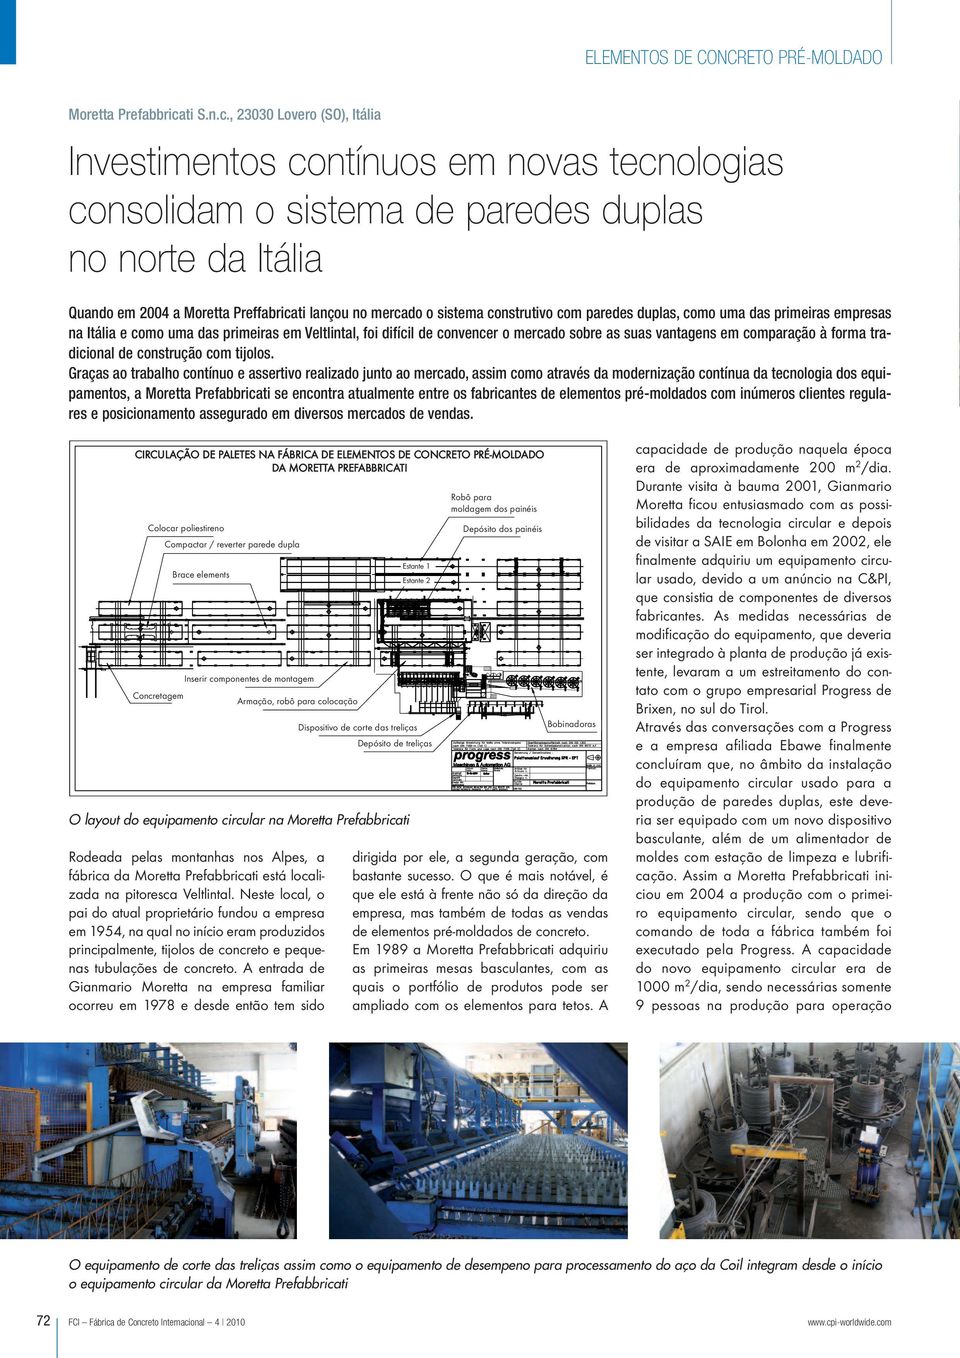 , 23030 Lovero (SO), Itália Investimentos contínuos em novas tecnologias consolidam o sistema de paredes duplas no norte da Itália Quando em 2004 a Moretta Preffabricati lançou no mercado o sistema